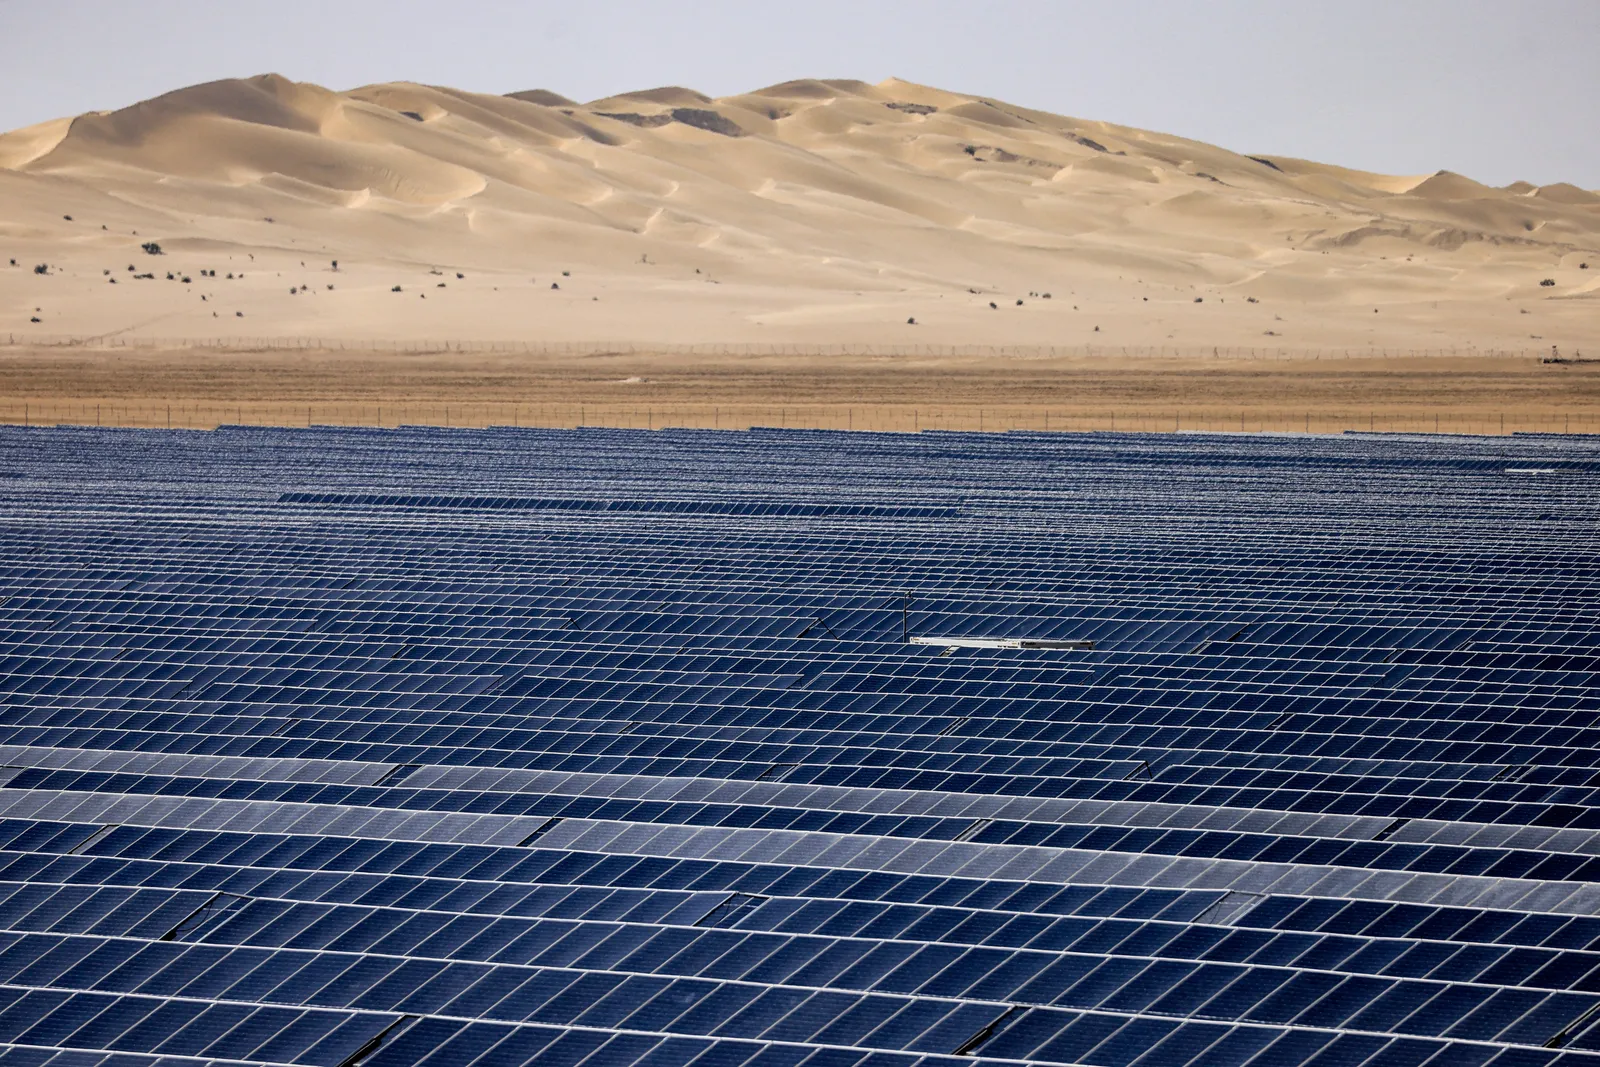 Solar plant near Abu Dhabi